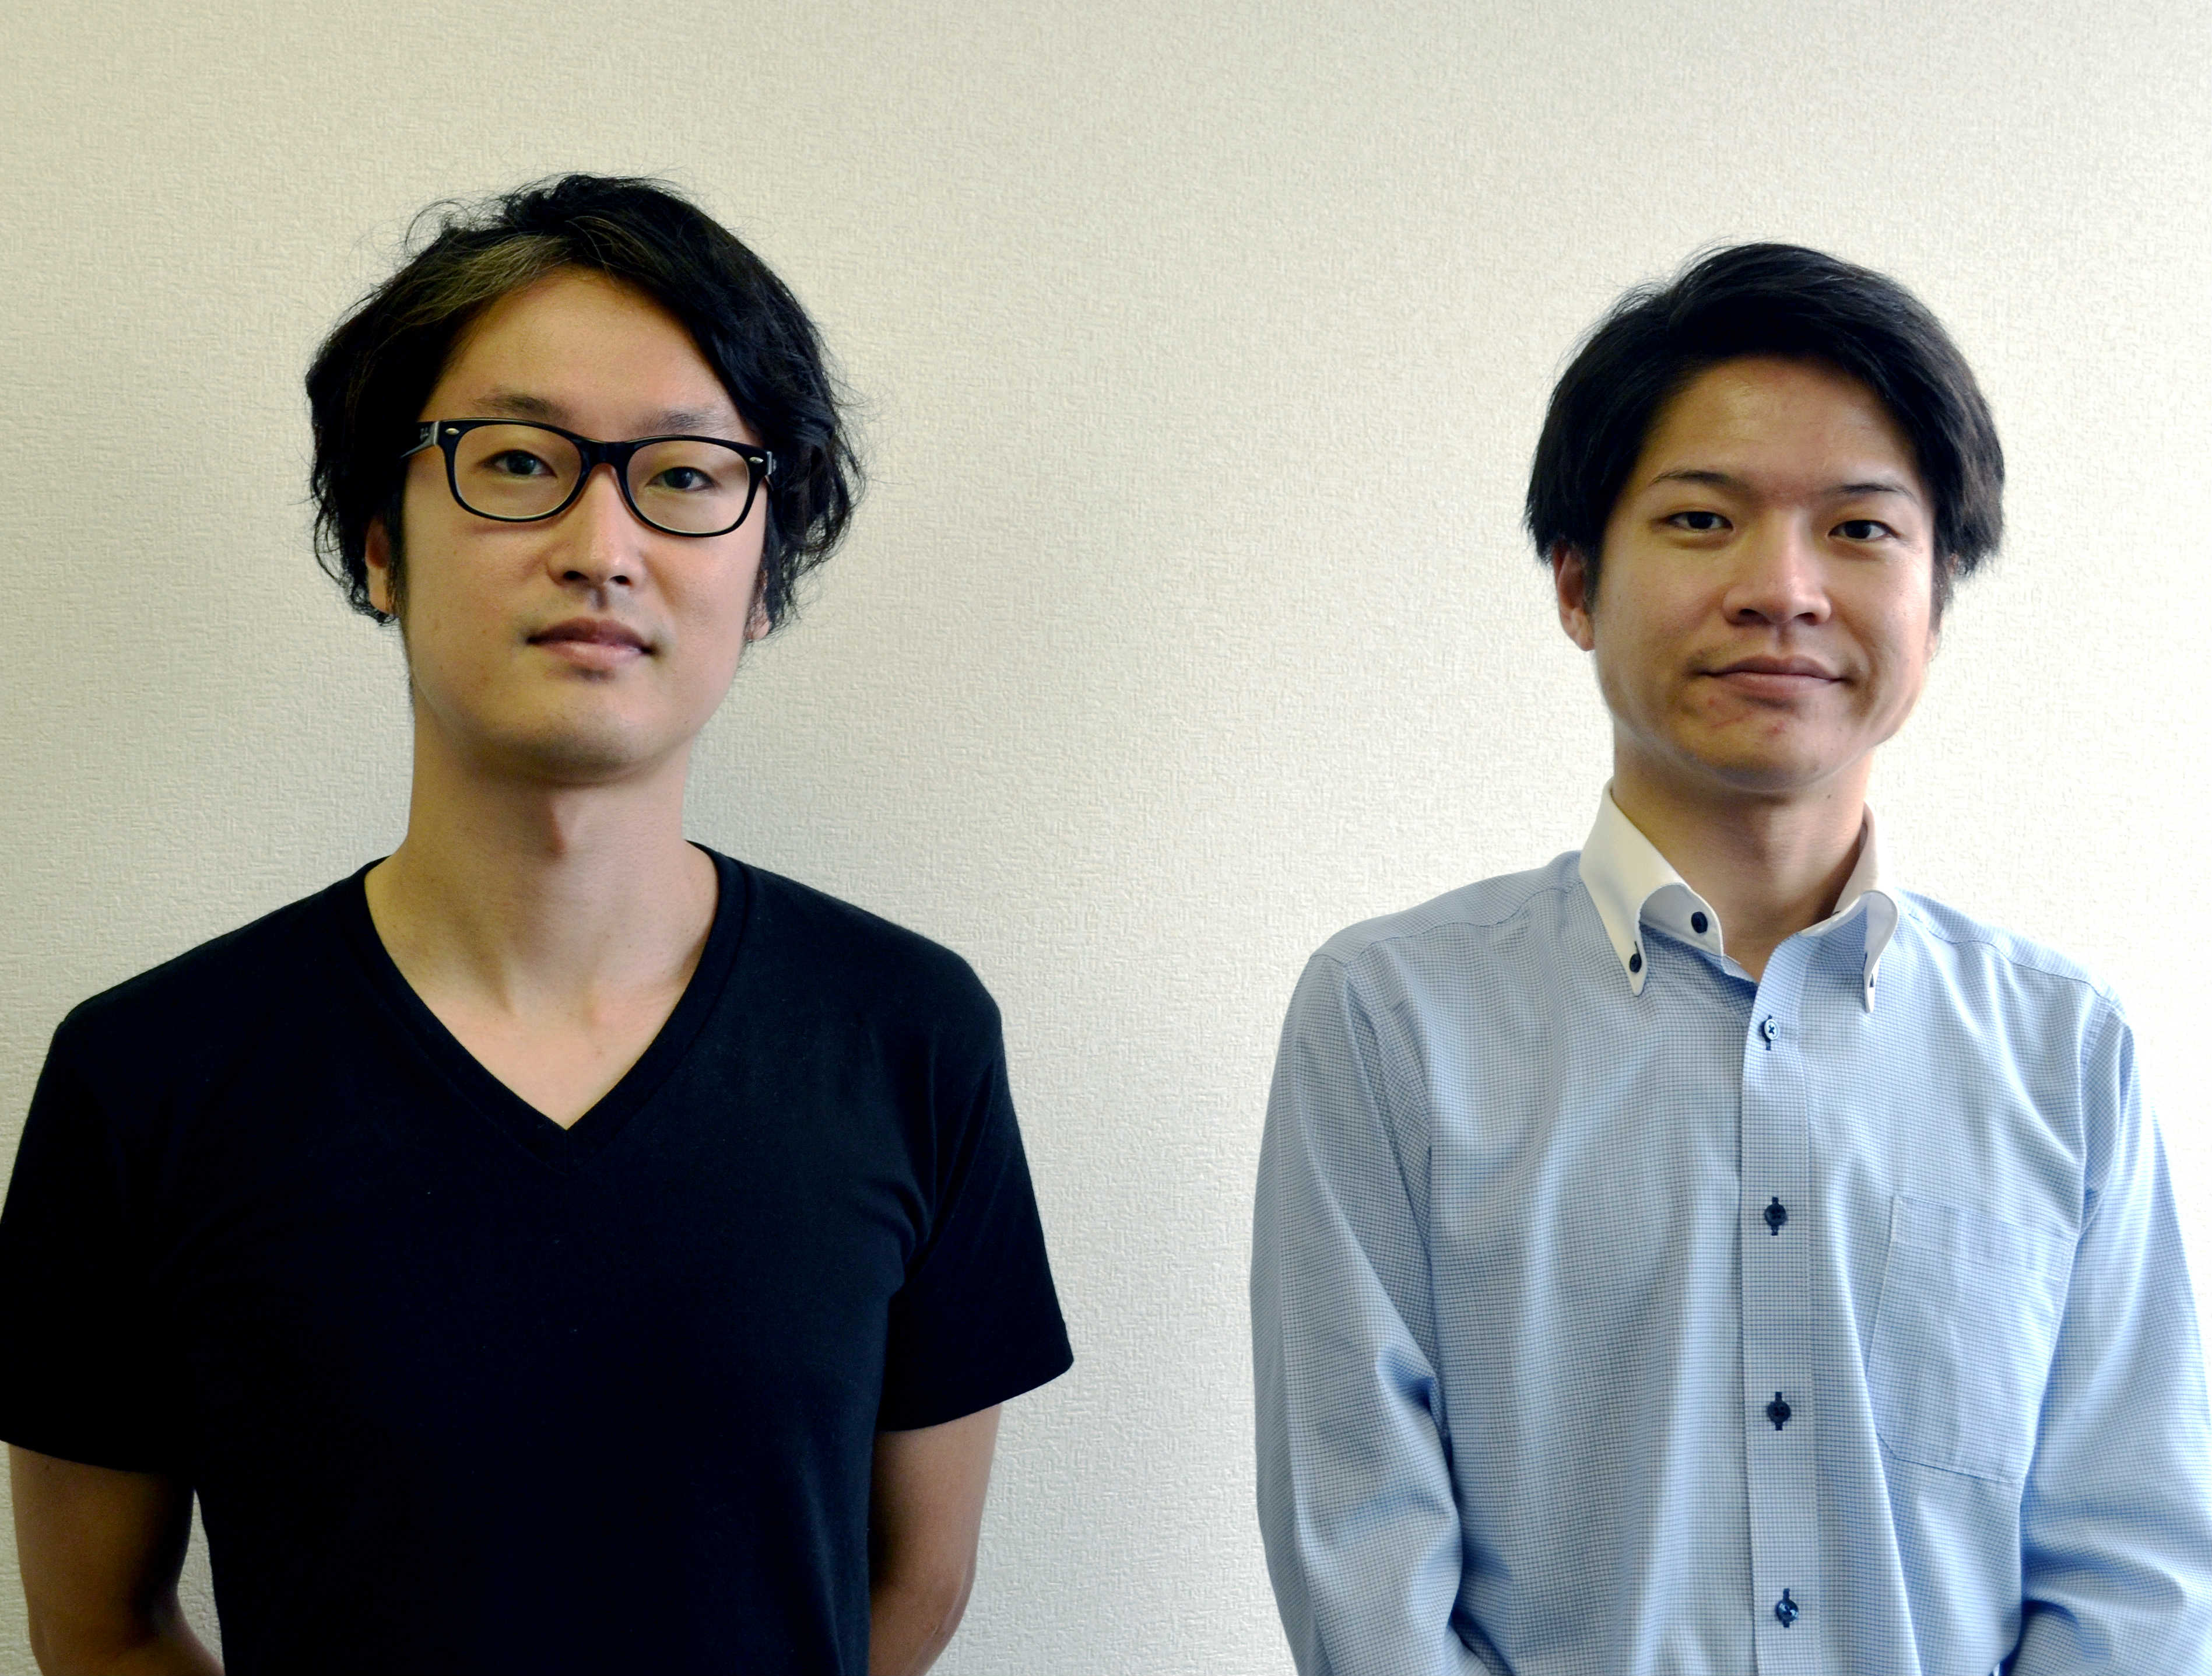 ウエーブ商品開発担当の日和田知洋氏（右）、製造担当の澤 知也氏